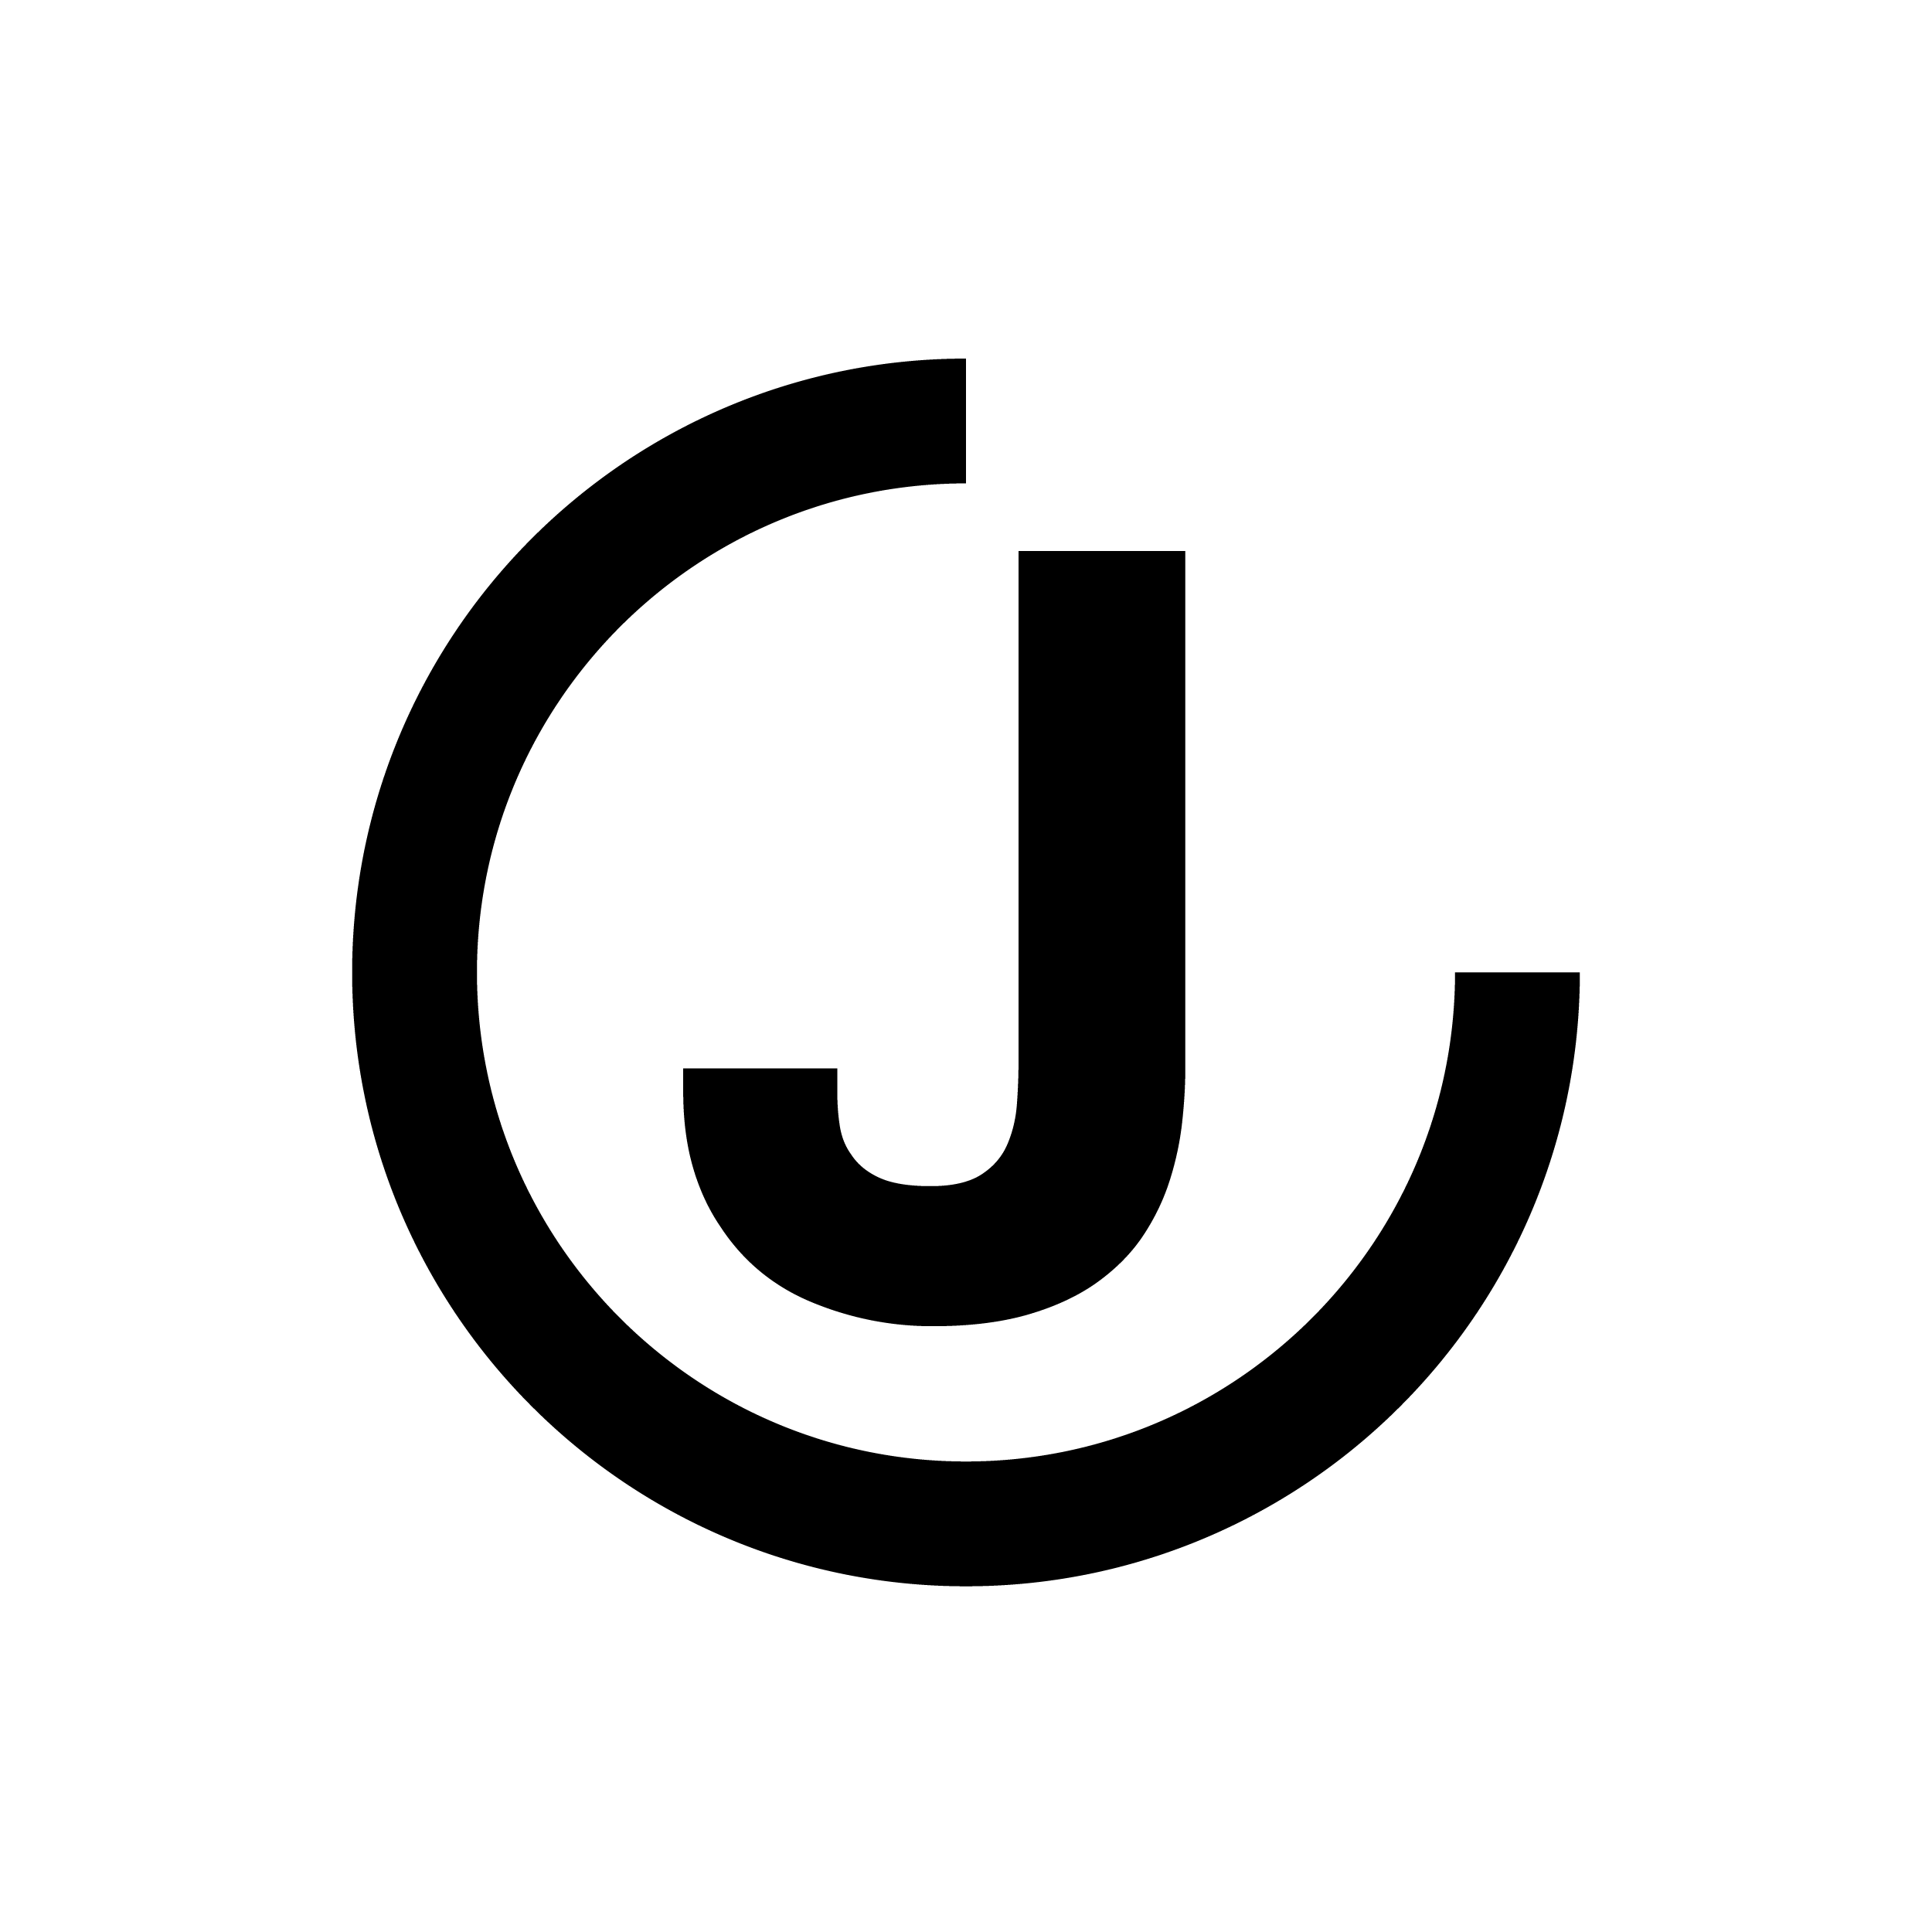 JC Logo - Logo jc png 4 PNG Image